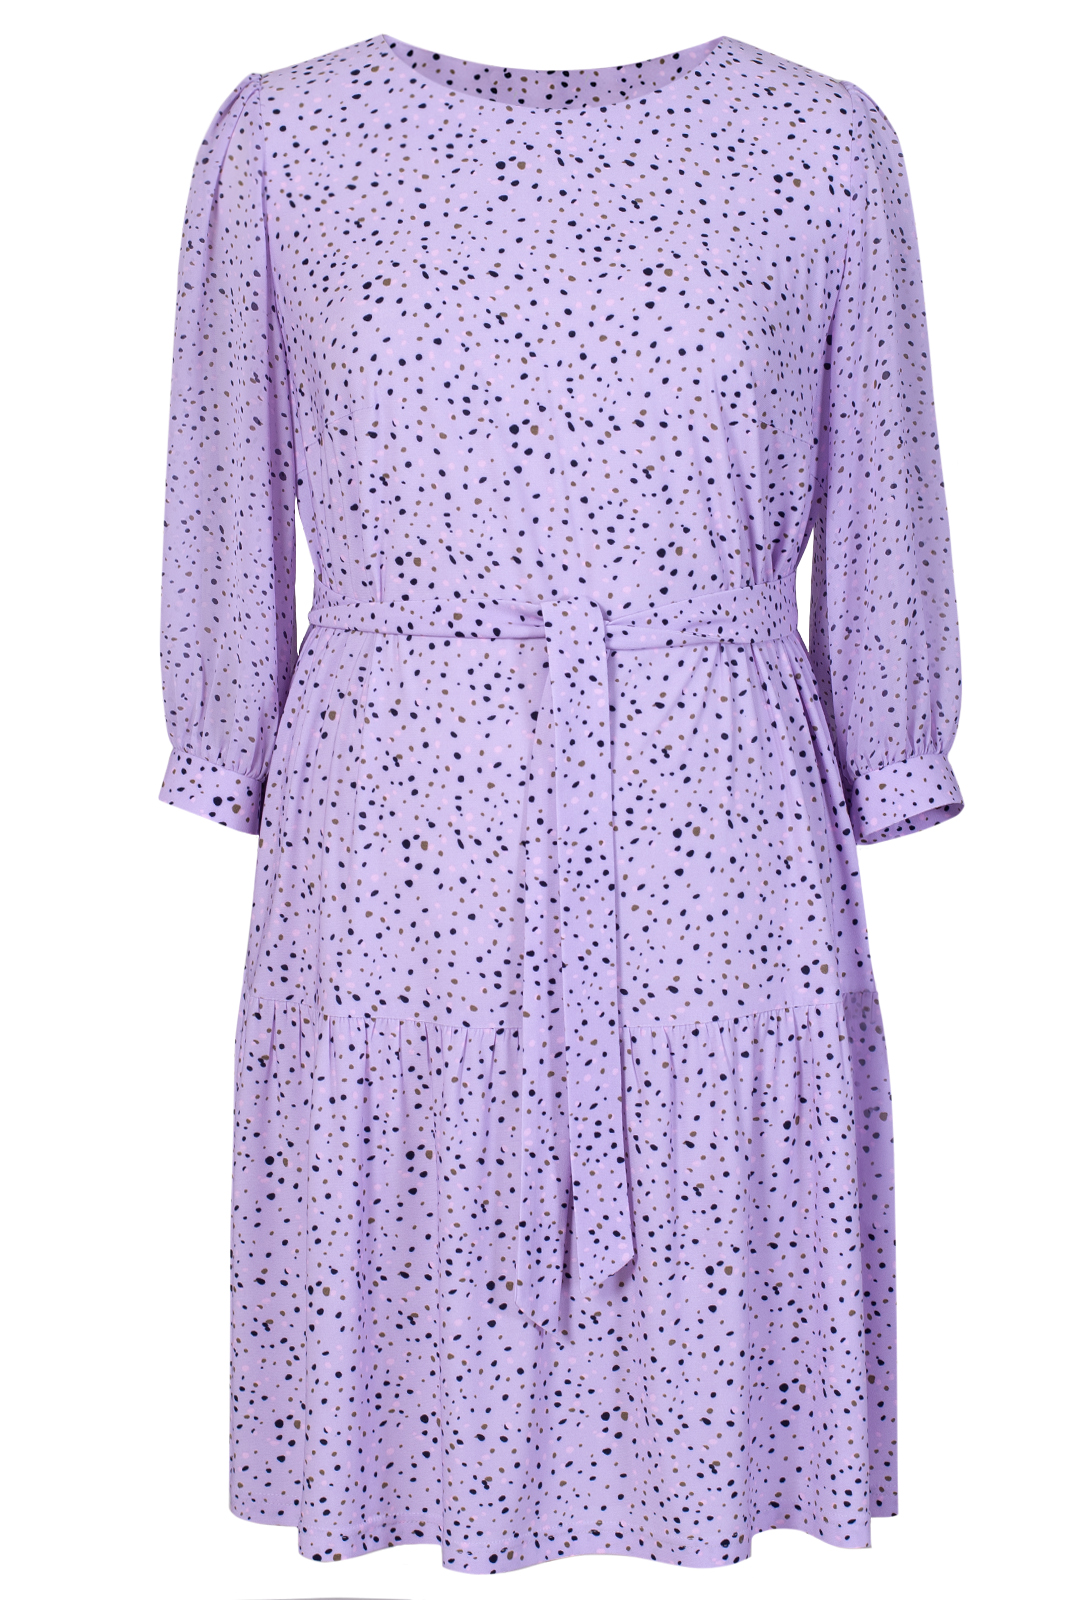 Платье женское Mila Bezgerts 3934зп фиолетовое 52 RU